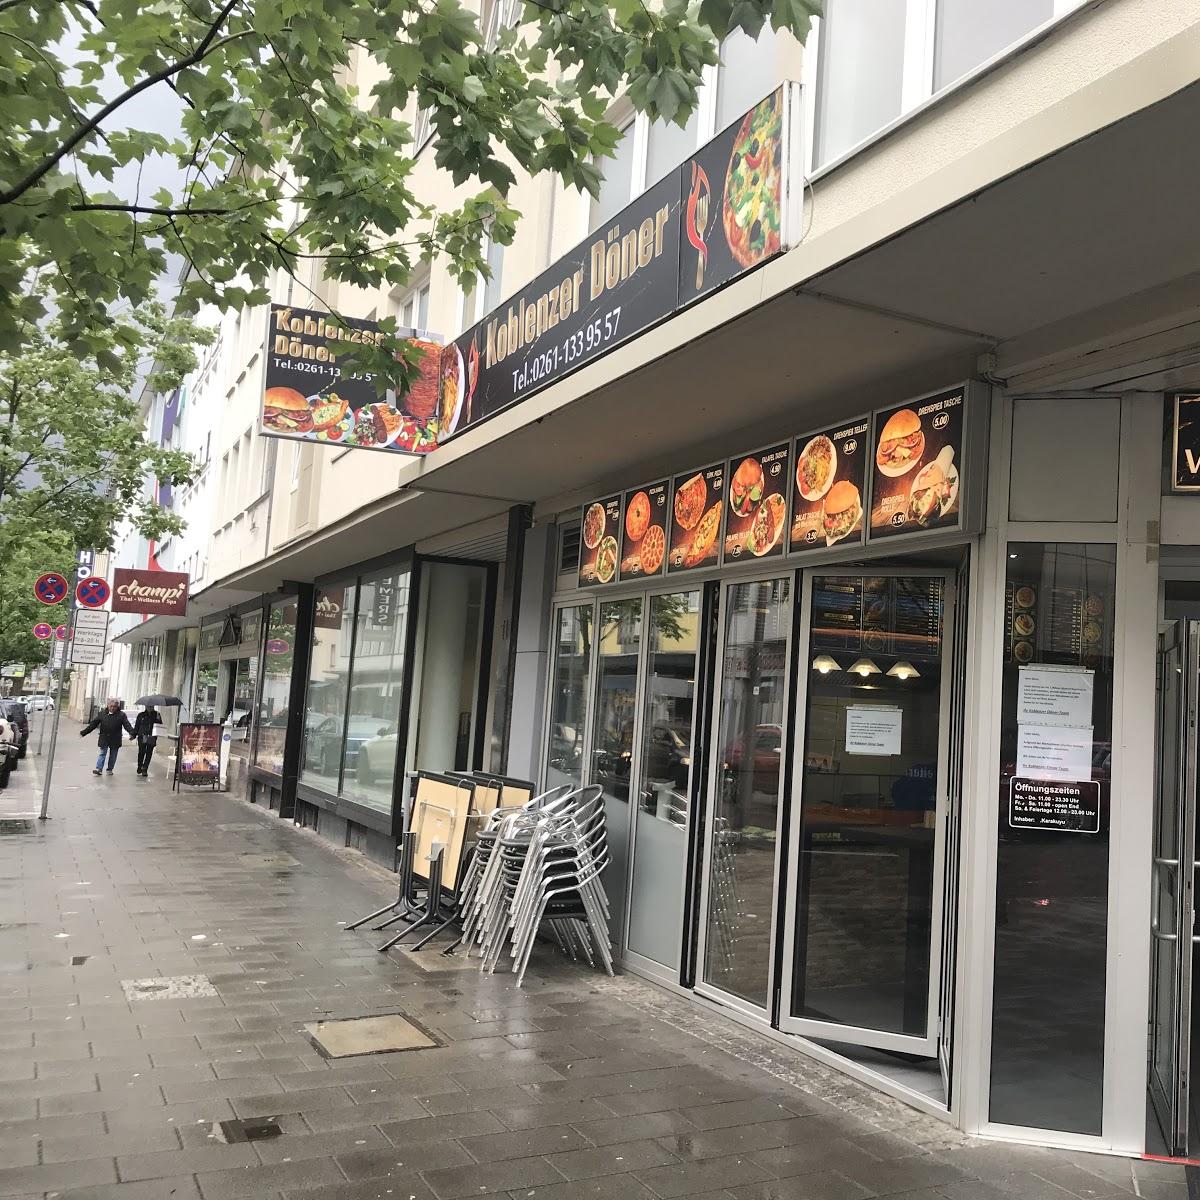 Restaurant "er Döner" in Koblenz